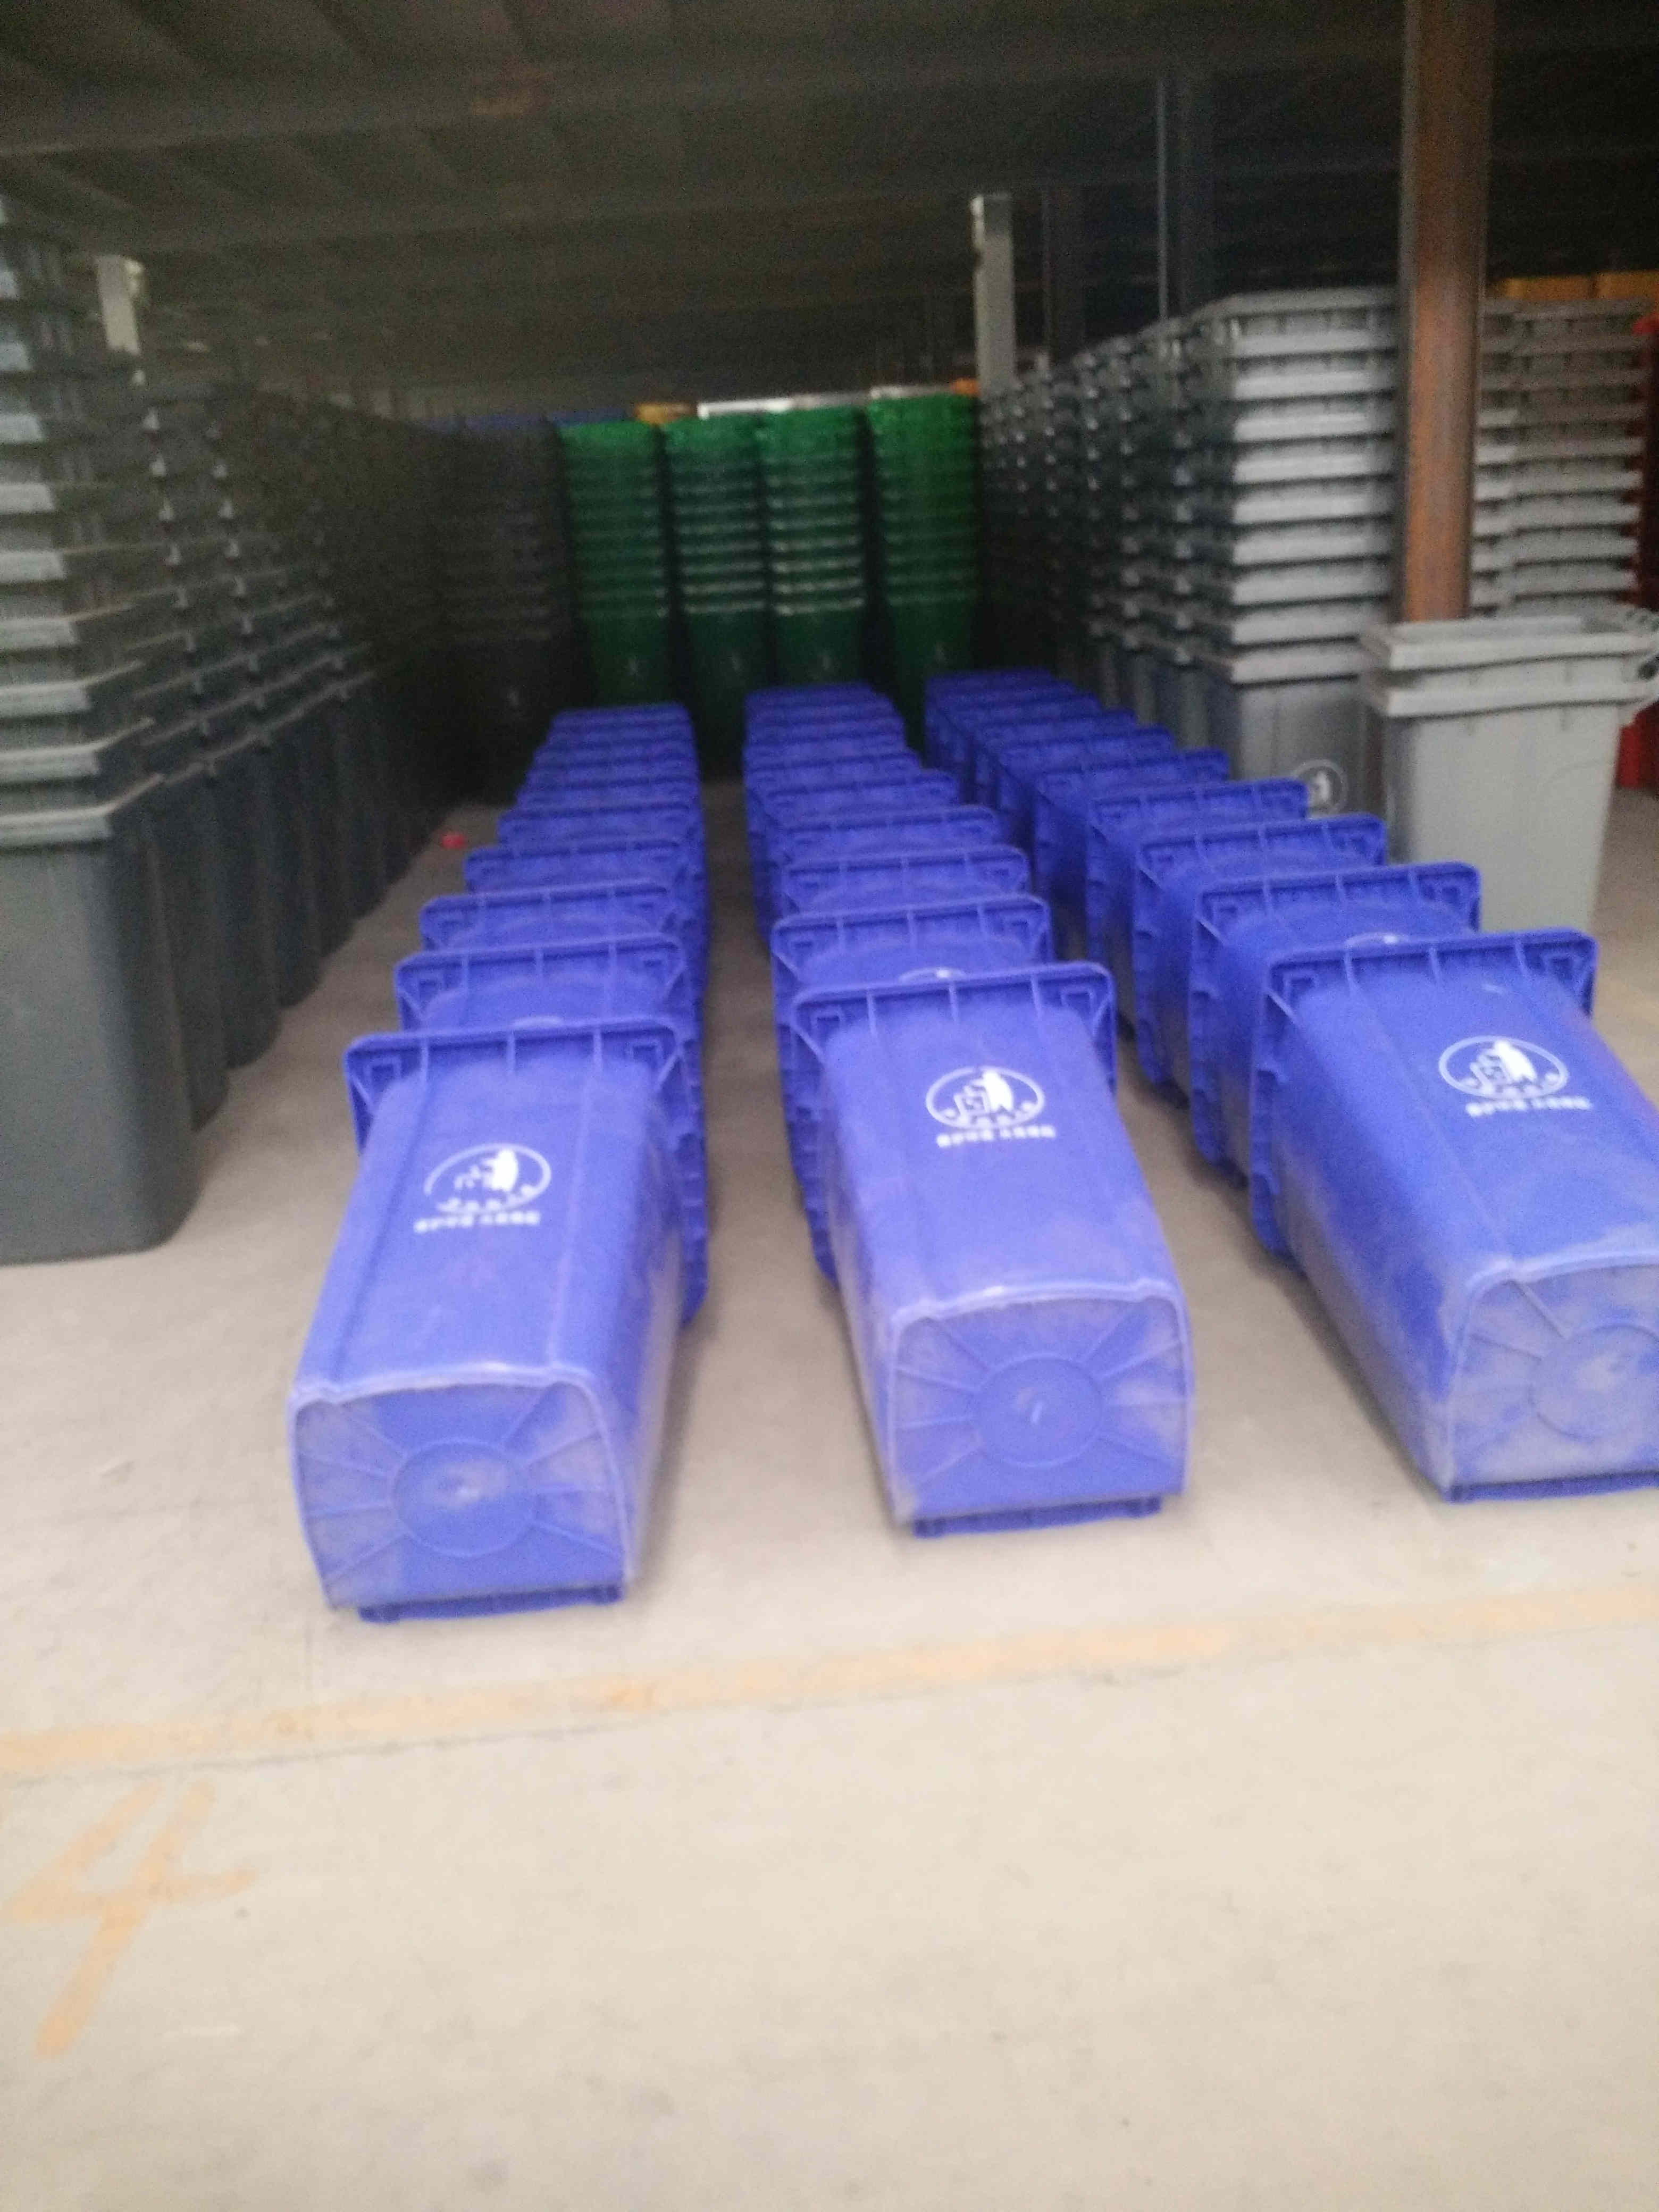 广东潮州240L分类垃圾桶尺寸分类垃圾桶需求大增